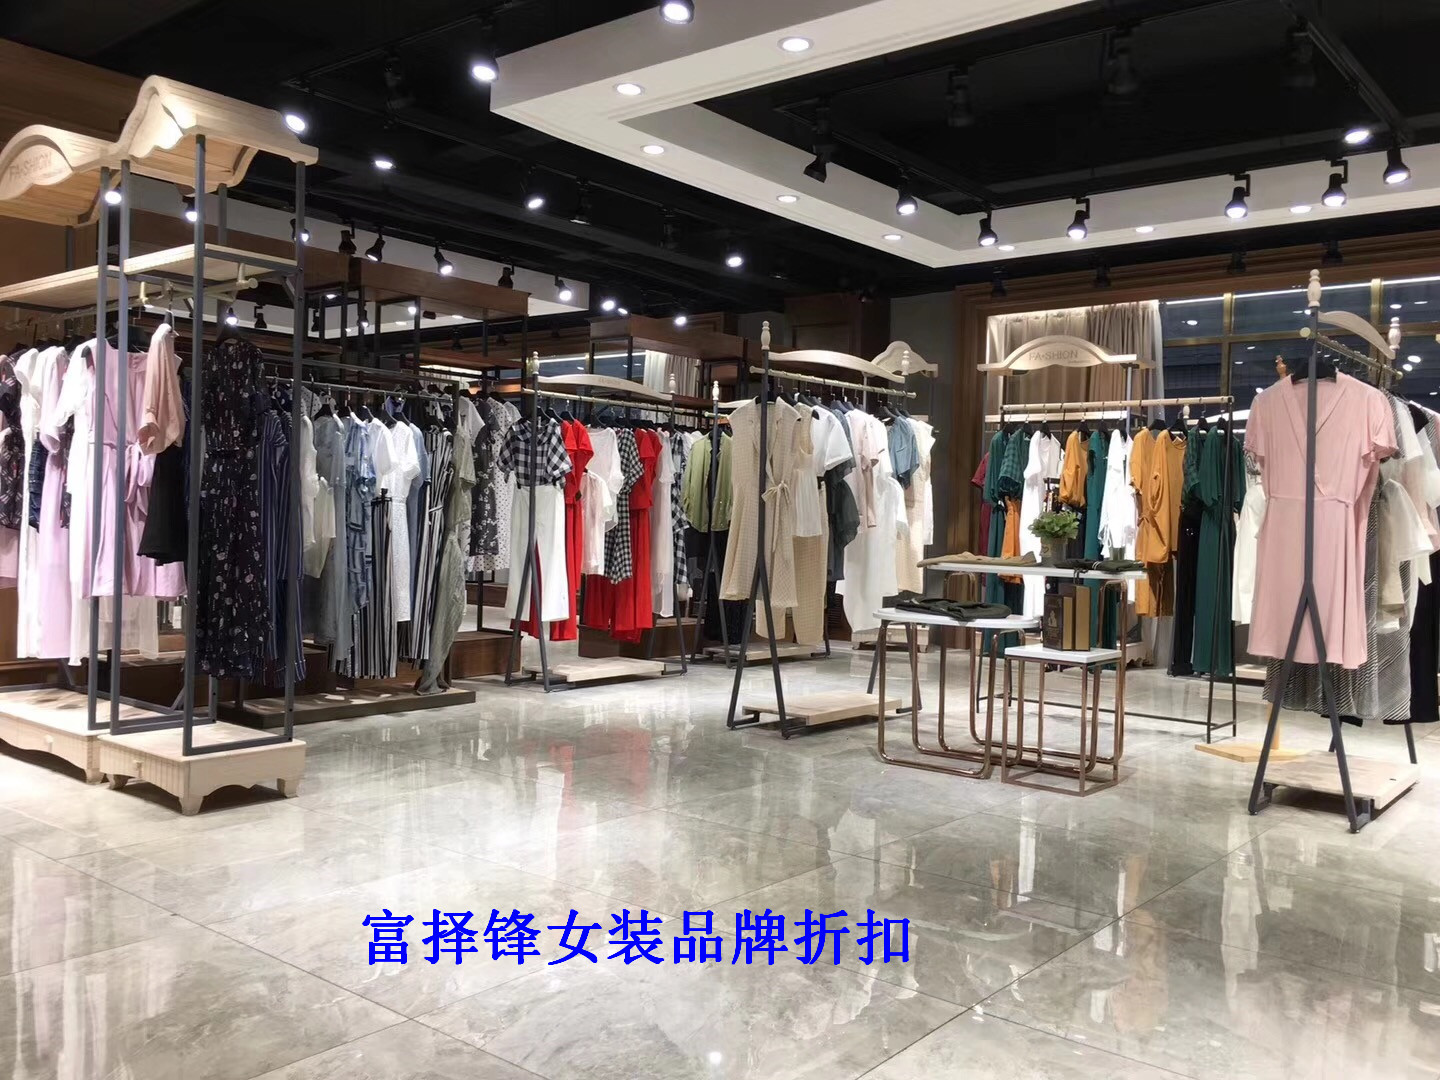 广州市佧茜文17夏女装品牌折扣找富择锋厂家